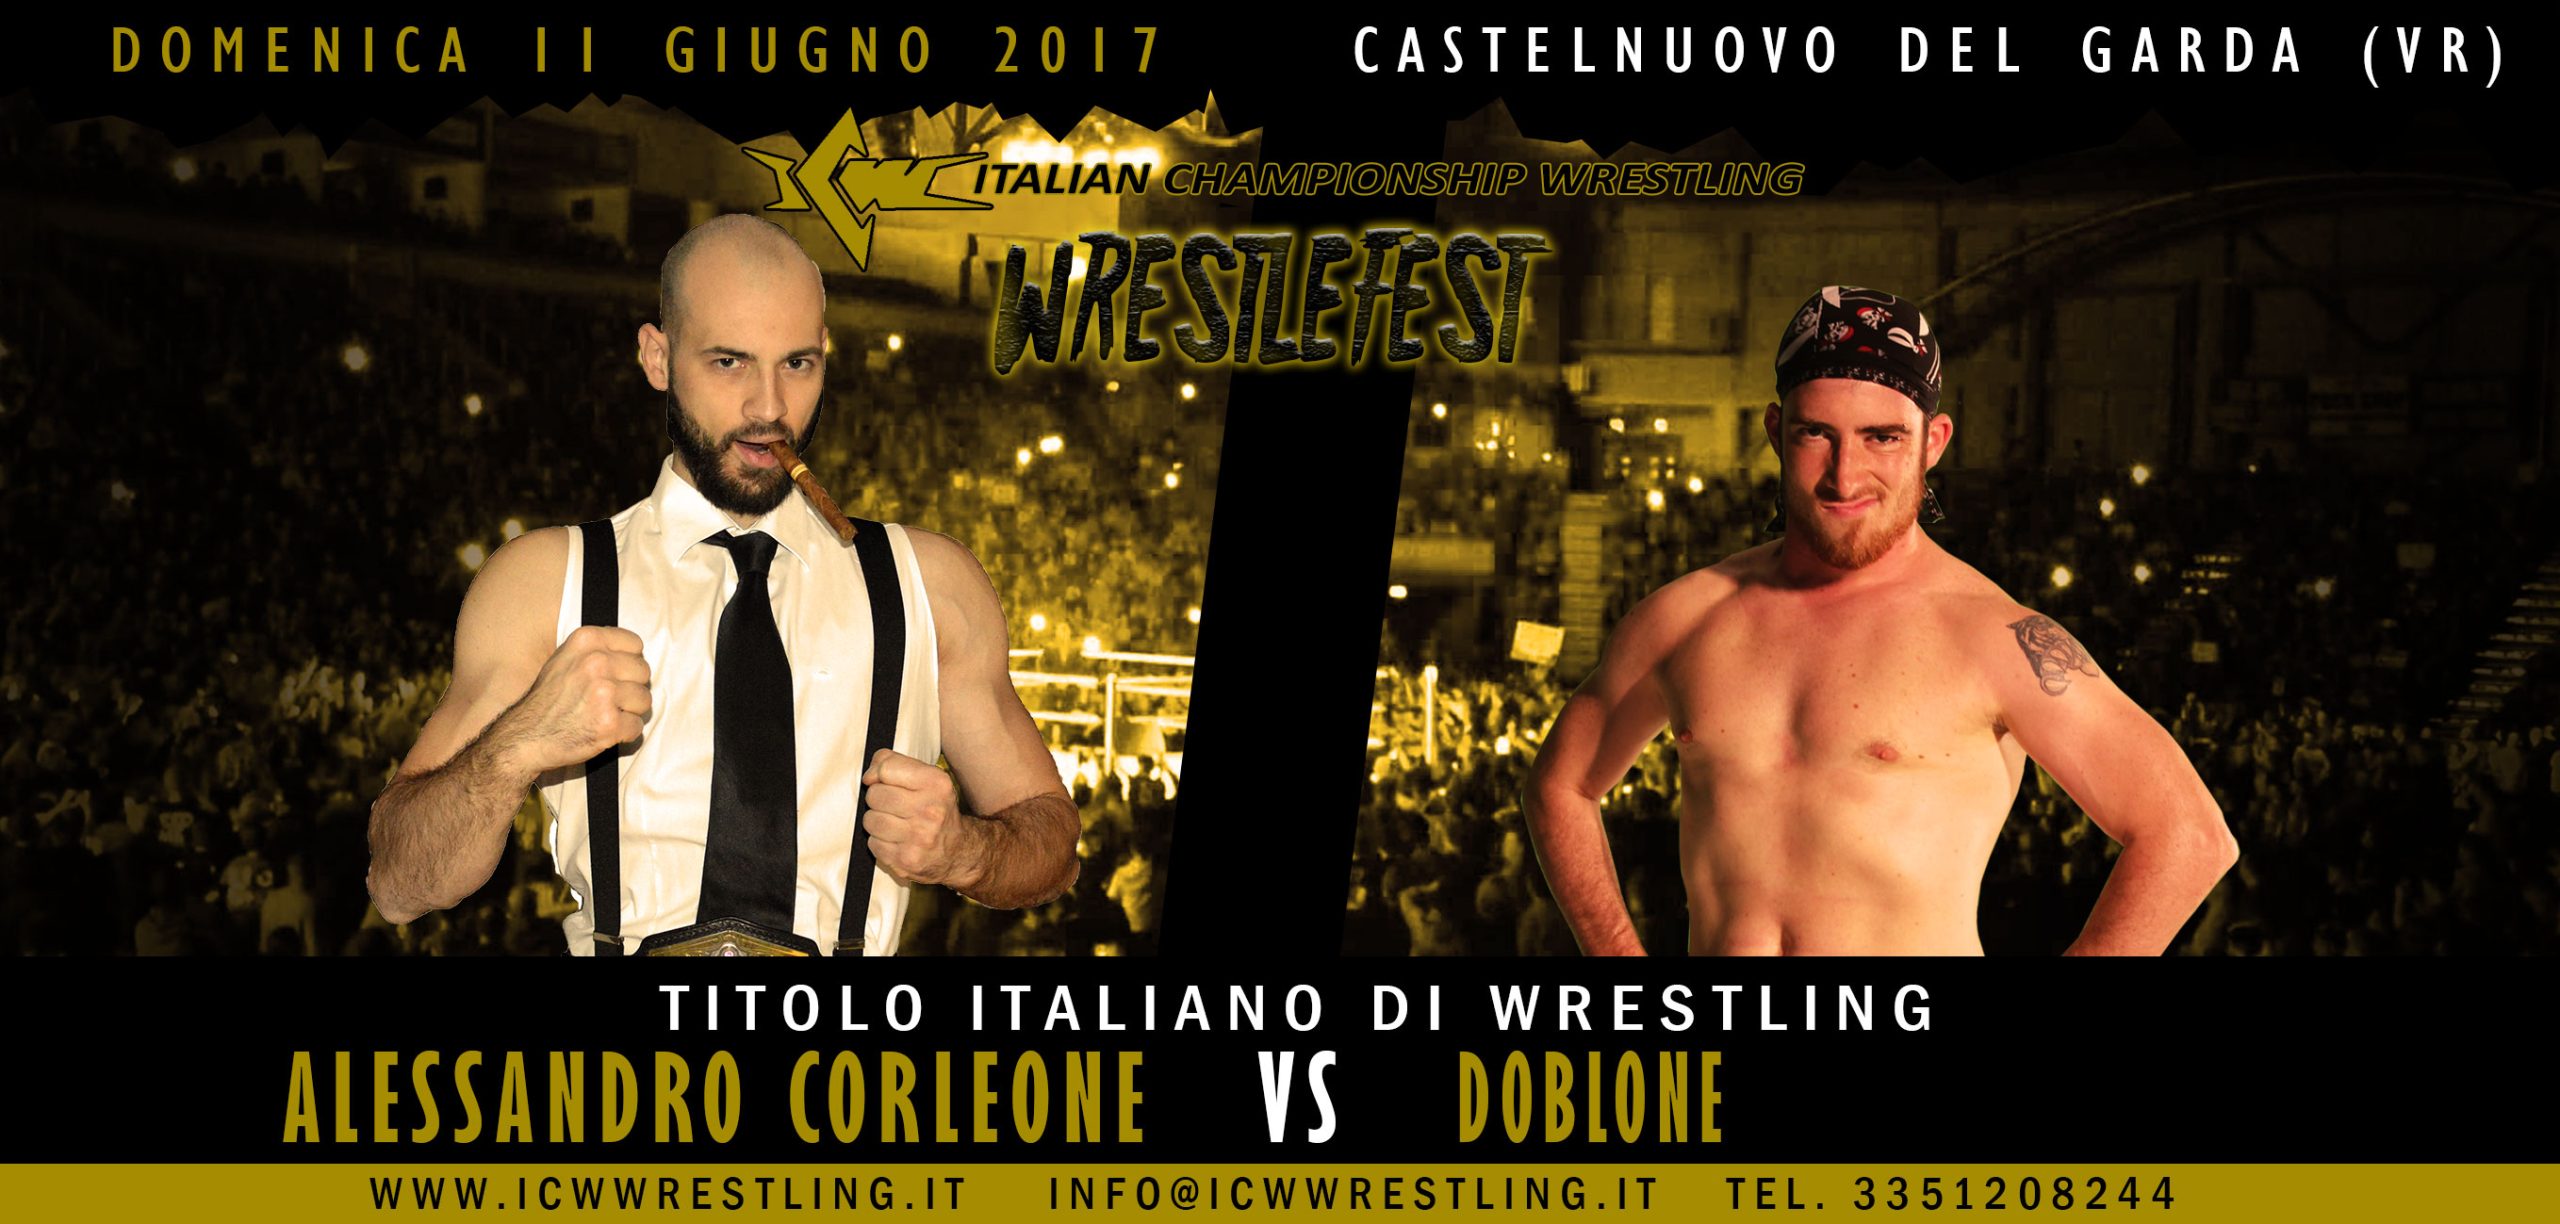 La ICW torna in Veneto con WrestleFest: la Card Completa degli incontri dell’11 giugno a Castelnuovo del Garda!